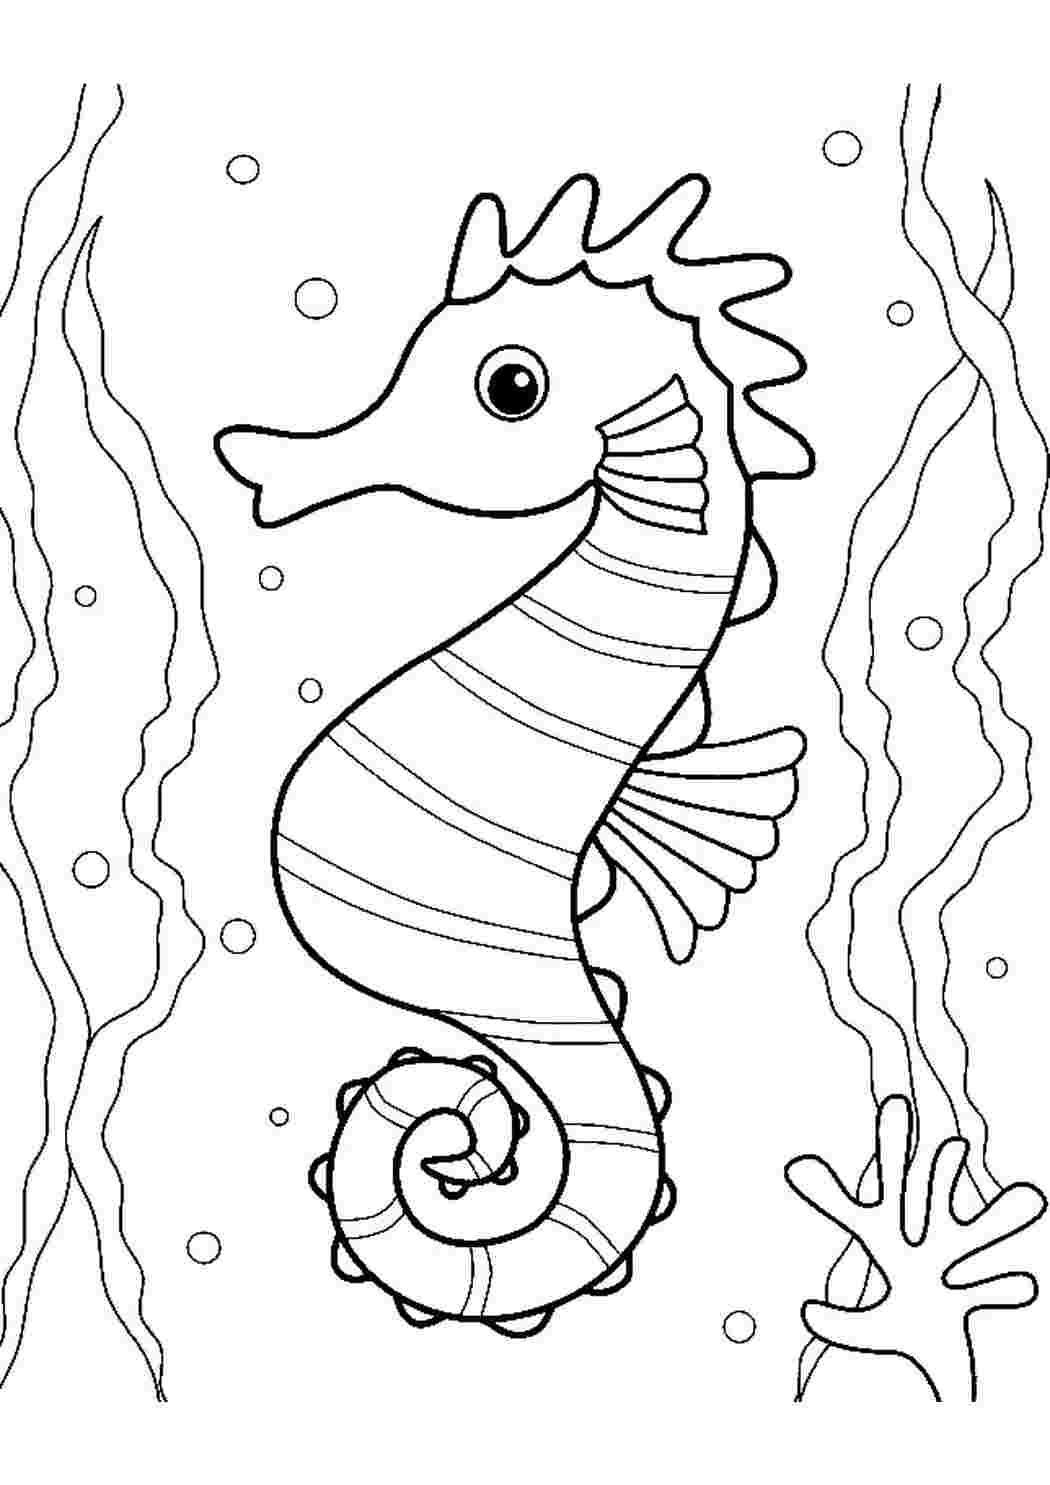 Раскраски Раскраска Раскраска морской конек в аквариуме распечатать. Раскраска для печати. Раскраска Раскраска морской конек в аквариуме распечатать. Красивые раскраски.